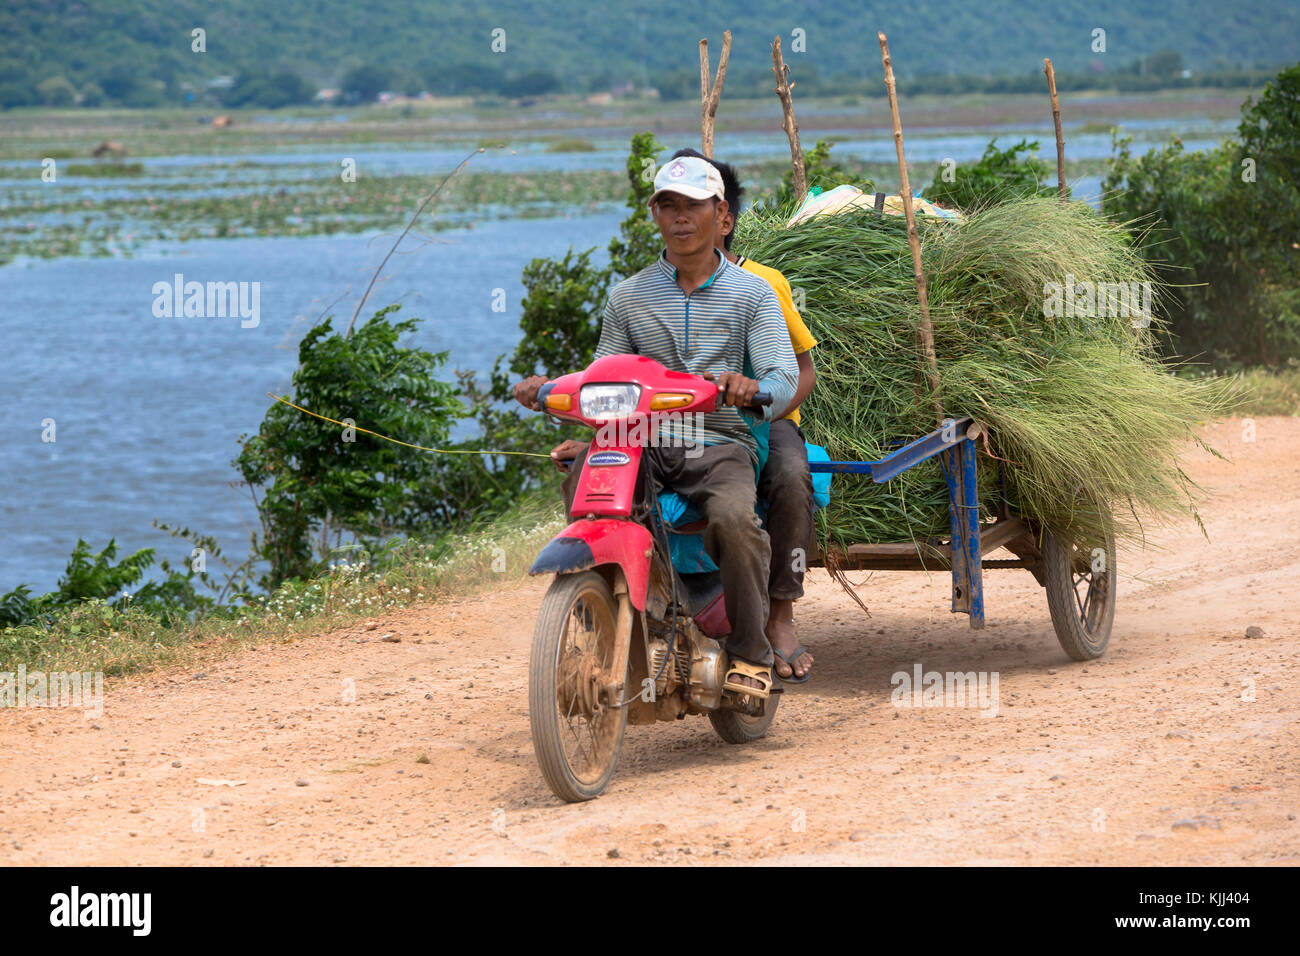 Les agriculteurs utilisant un scooter et panier pour le transport de marchandises. Battambang. Le Cambodge. Banque D'Images